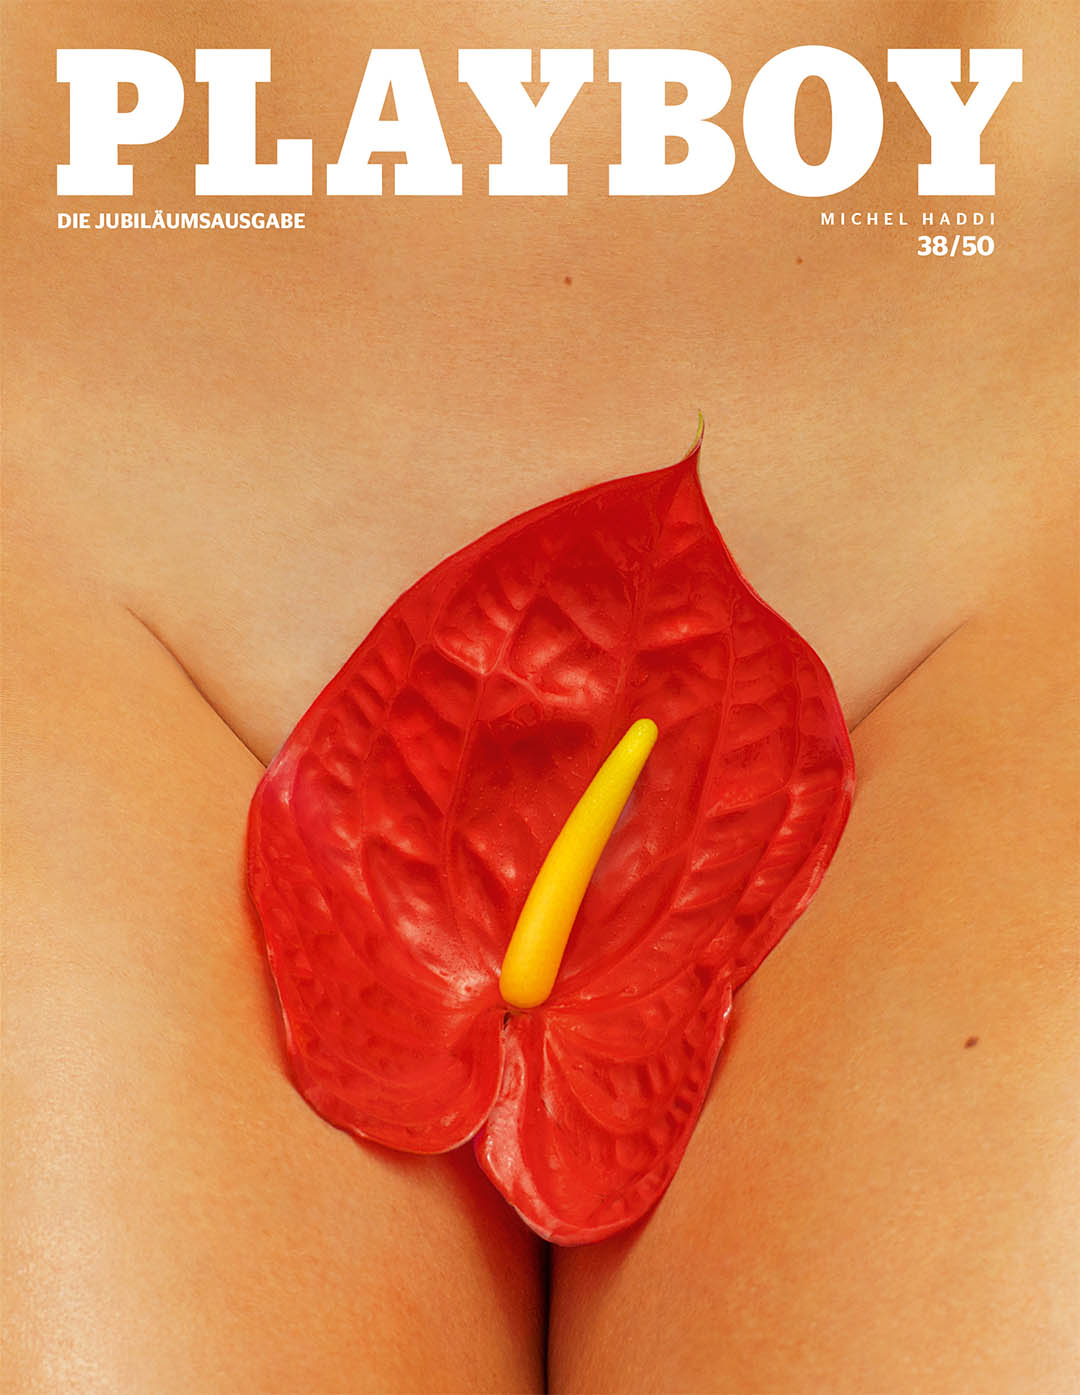 50 Jahre. 50 Cover. Das Titelbild gestaltet von Michel Haddi